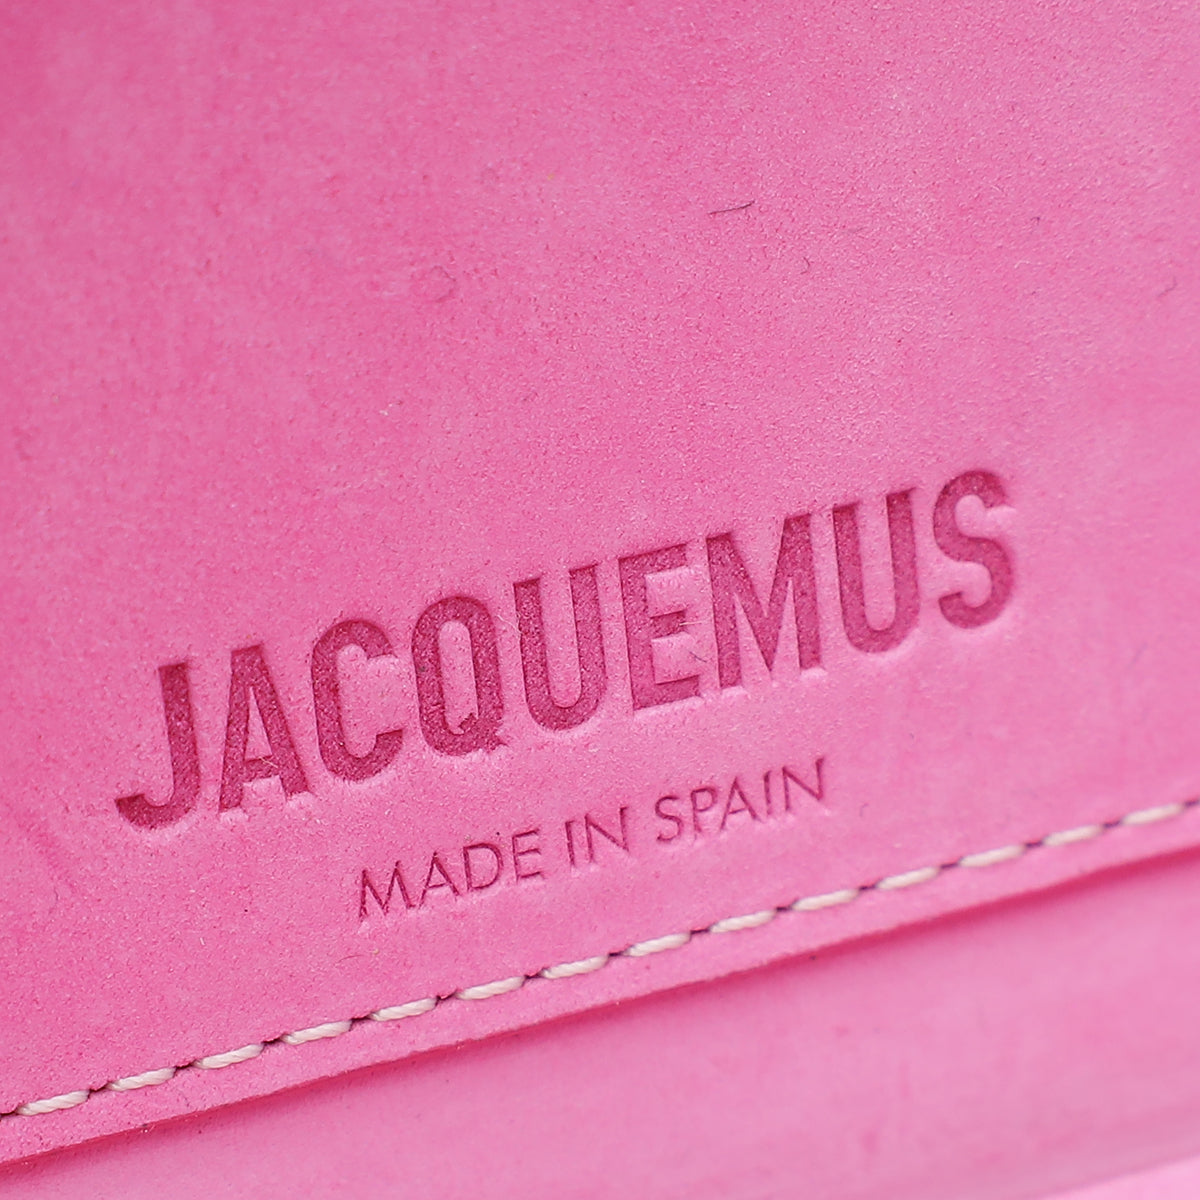 Jacquemus Pink Suede Le Porte Lunettes Triangle Bag